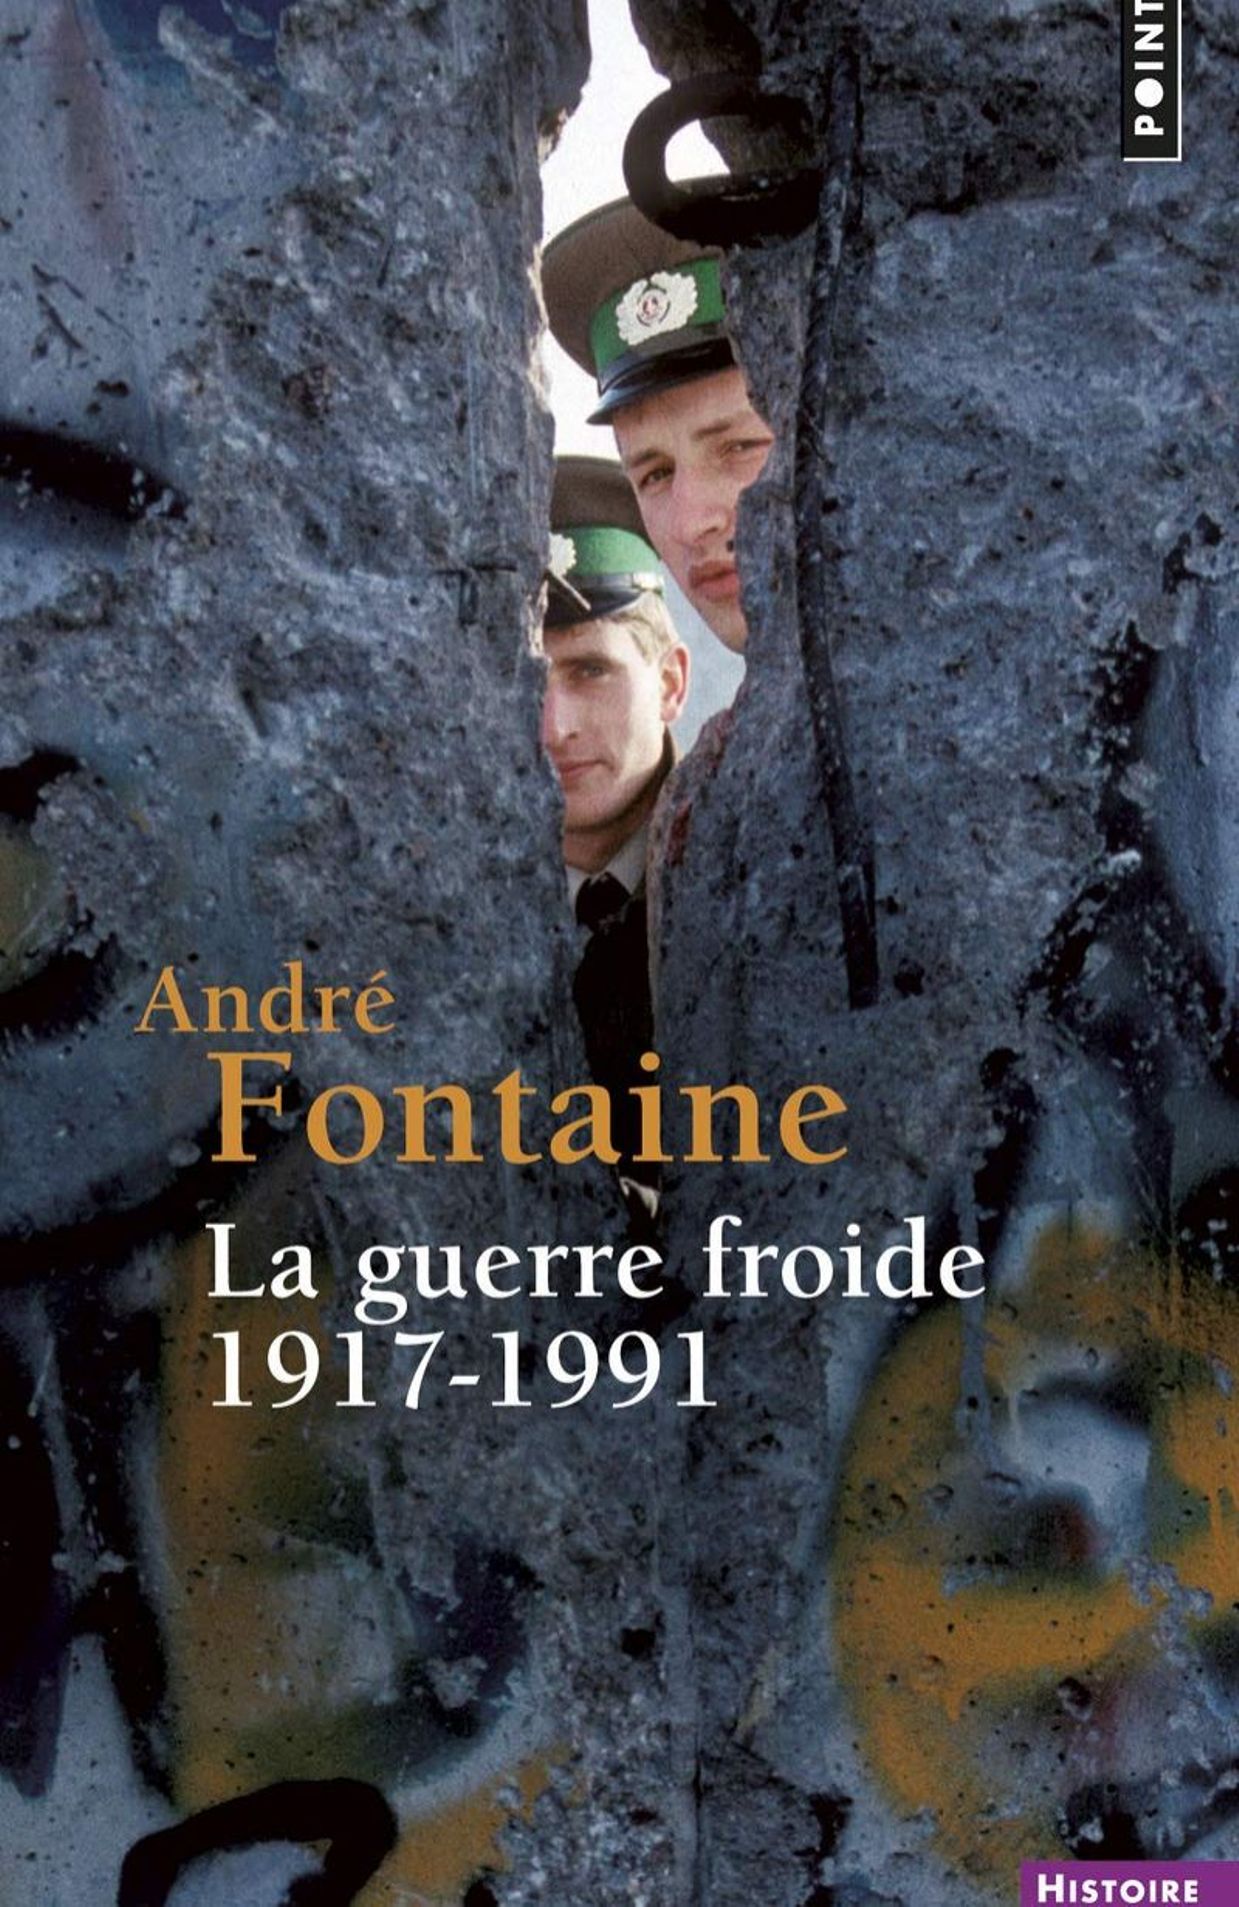 "La guerre froide 1917-1991", La Martinière/Points, Paris, 2006.